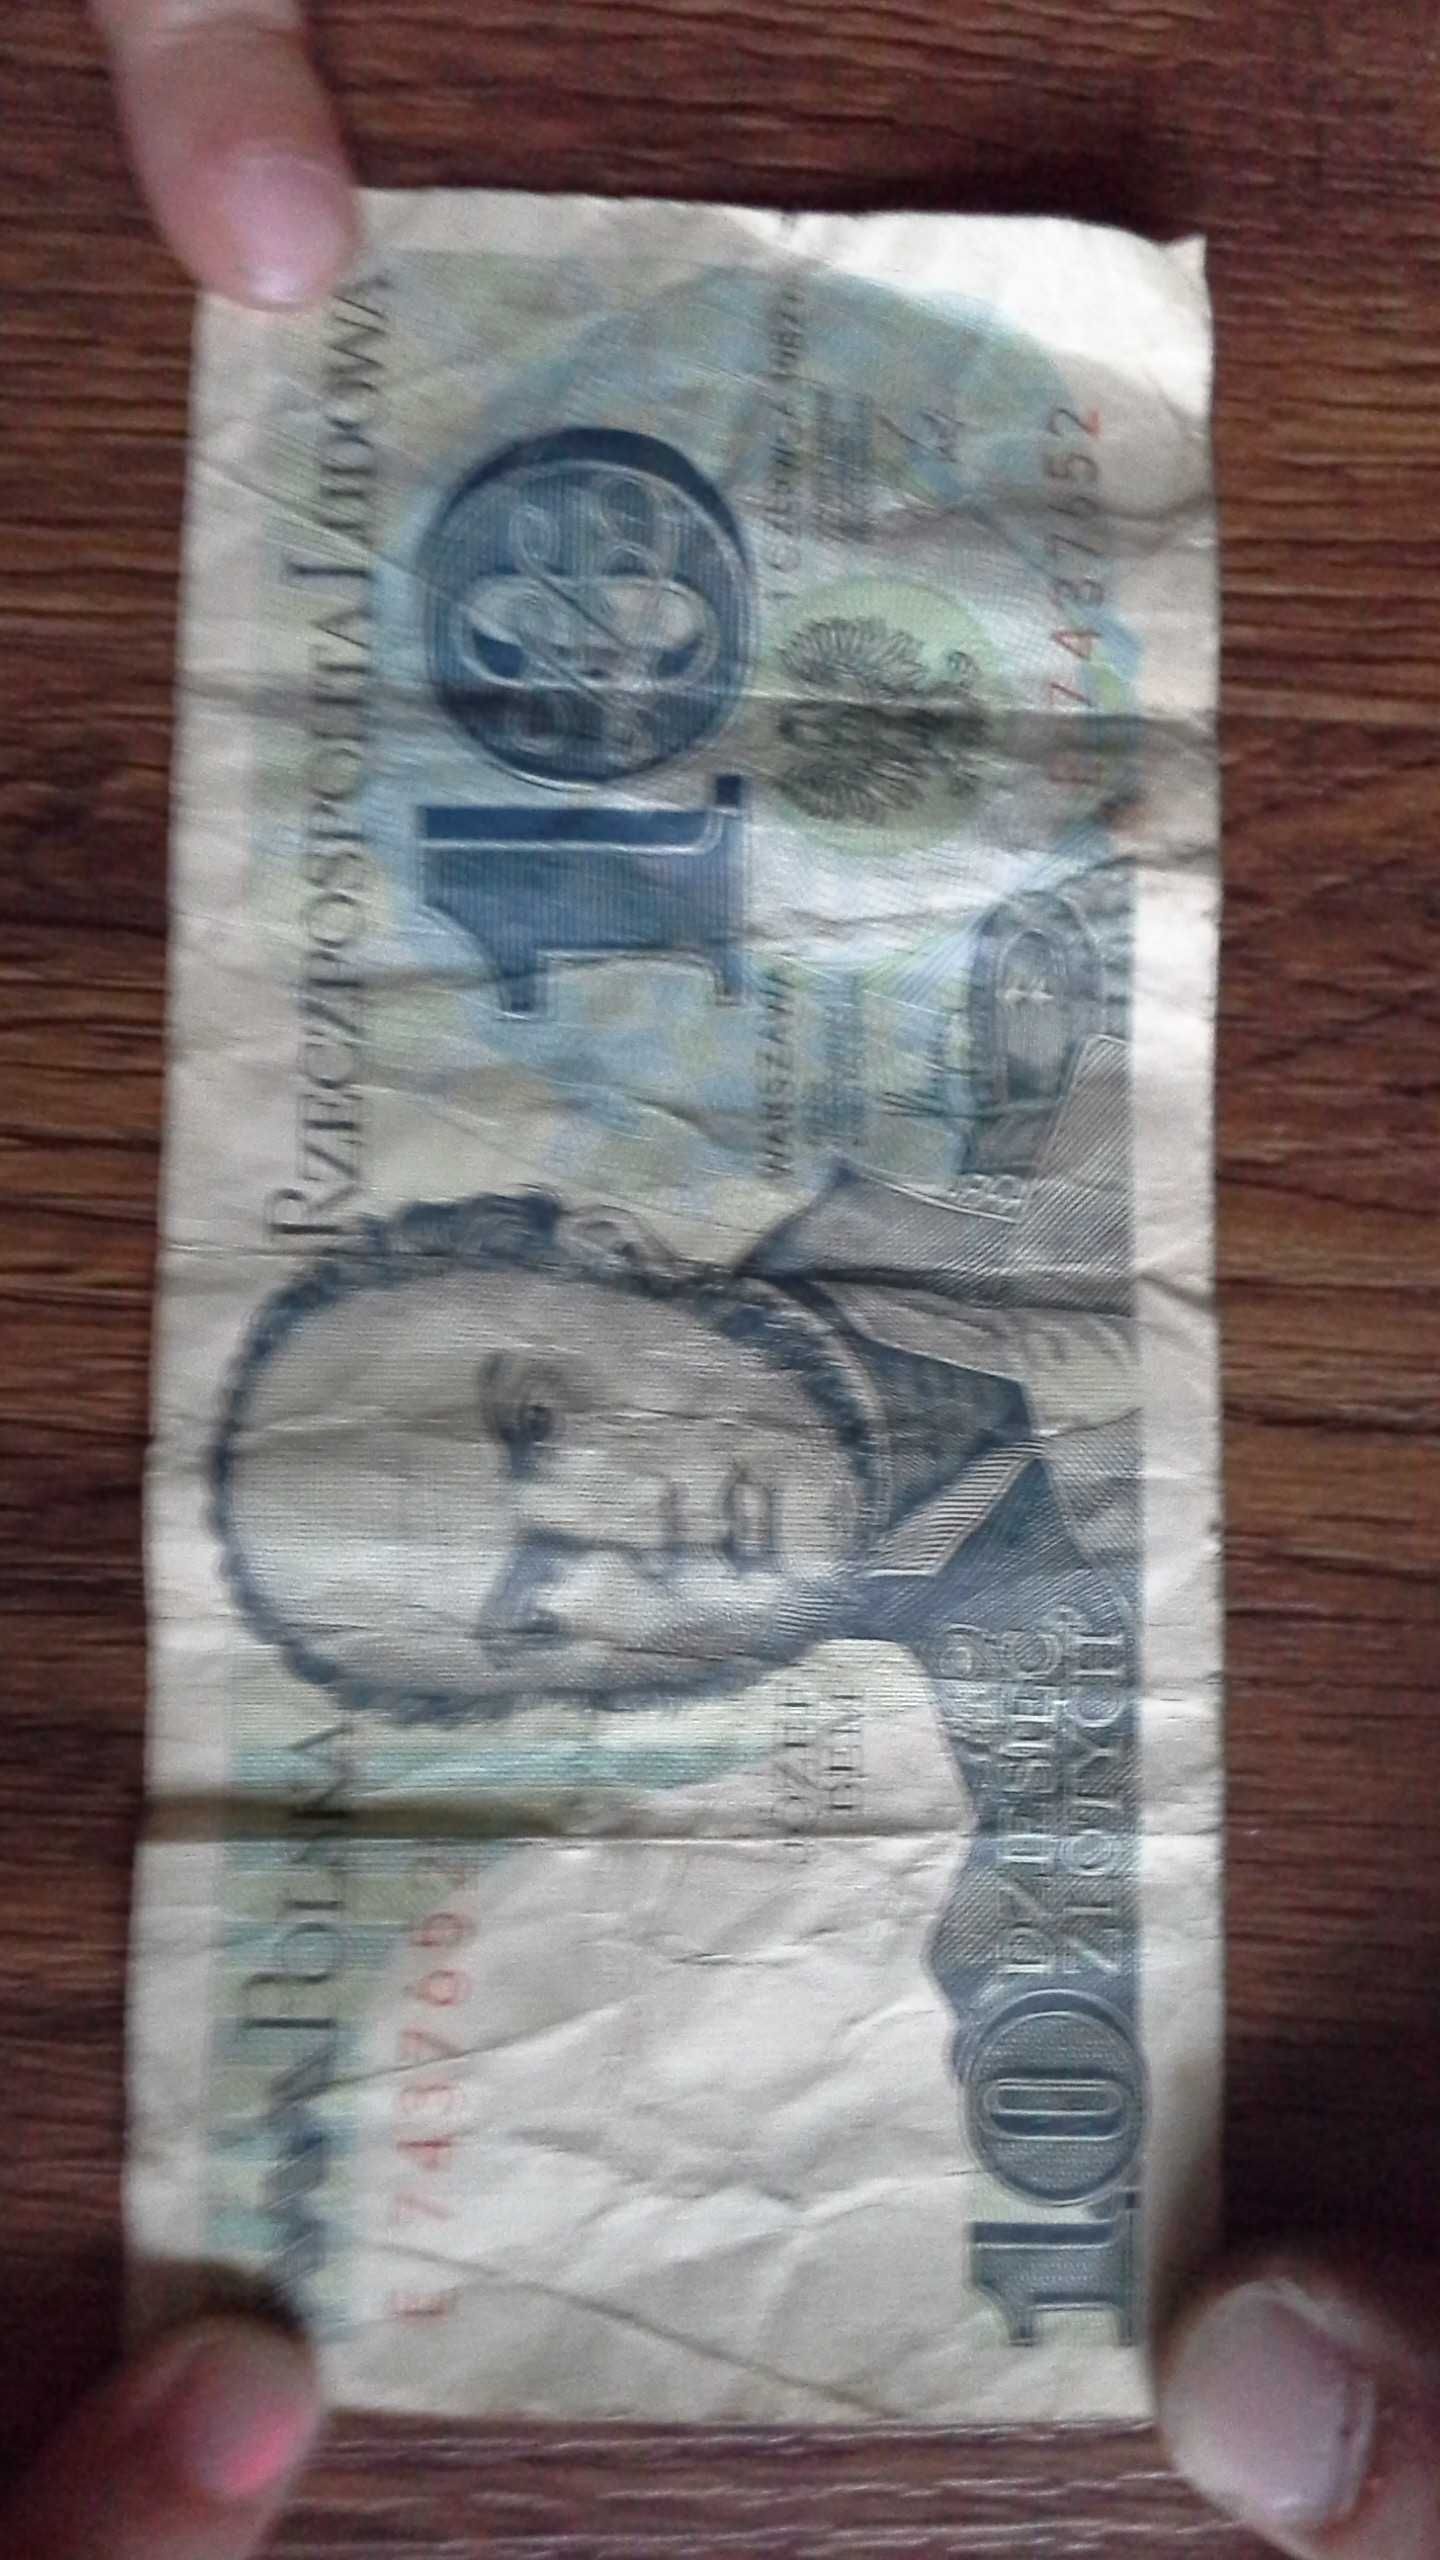 Banknot 10zl 10zł z 1982 roku z czasów PRL